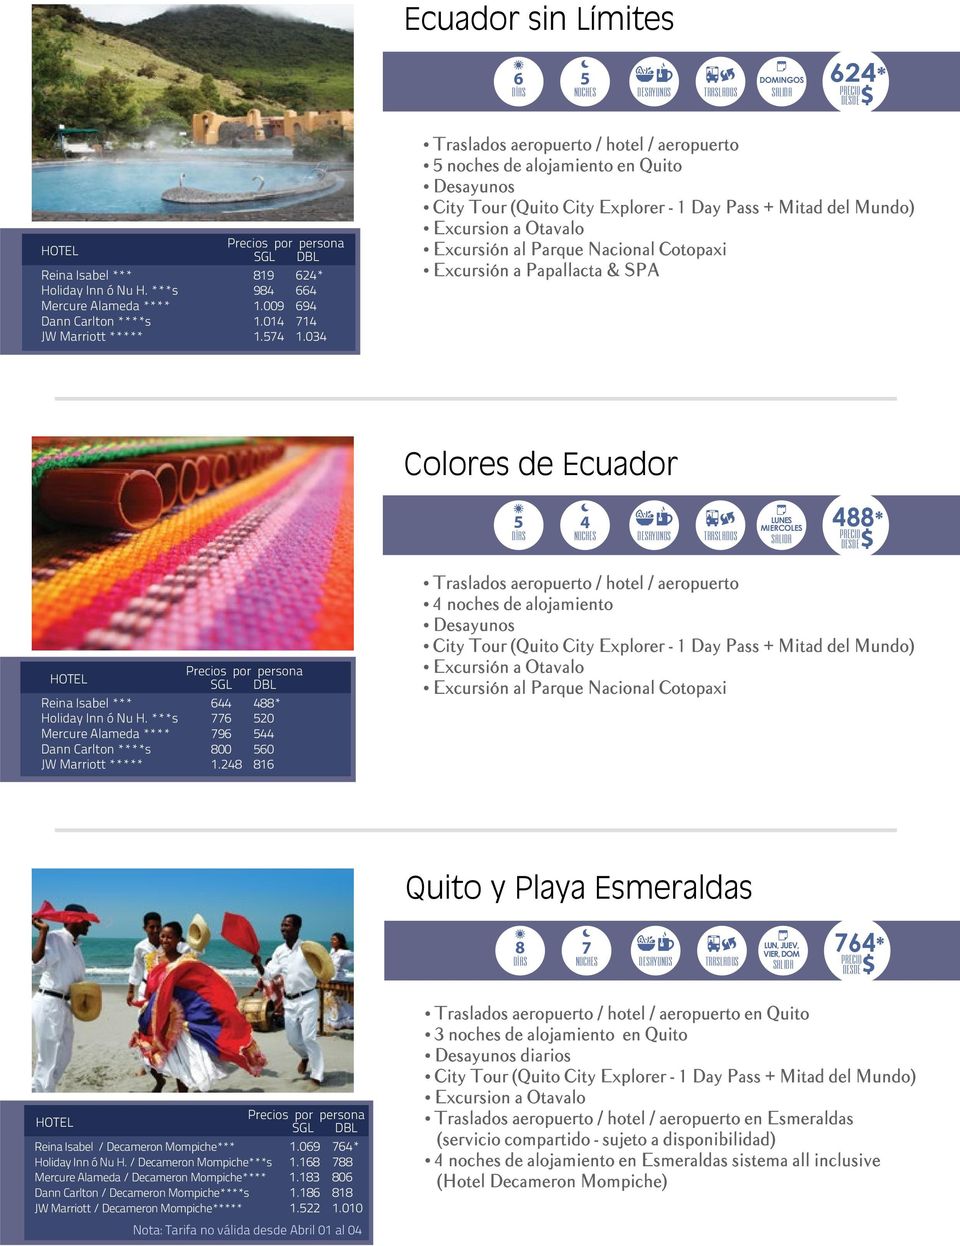 Excursión a Papallacta & SPA Colores de Ecuador 5 4 LUNES MIERCOLES 488* HOTEL SGL DBL Reina Isabel *** 644 488* Holiday Inn ó Nu H.